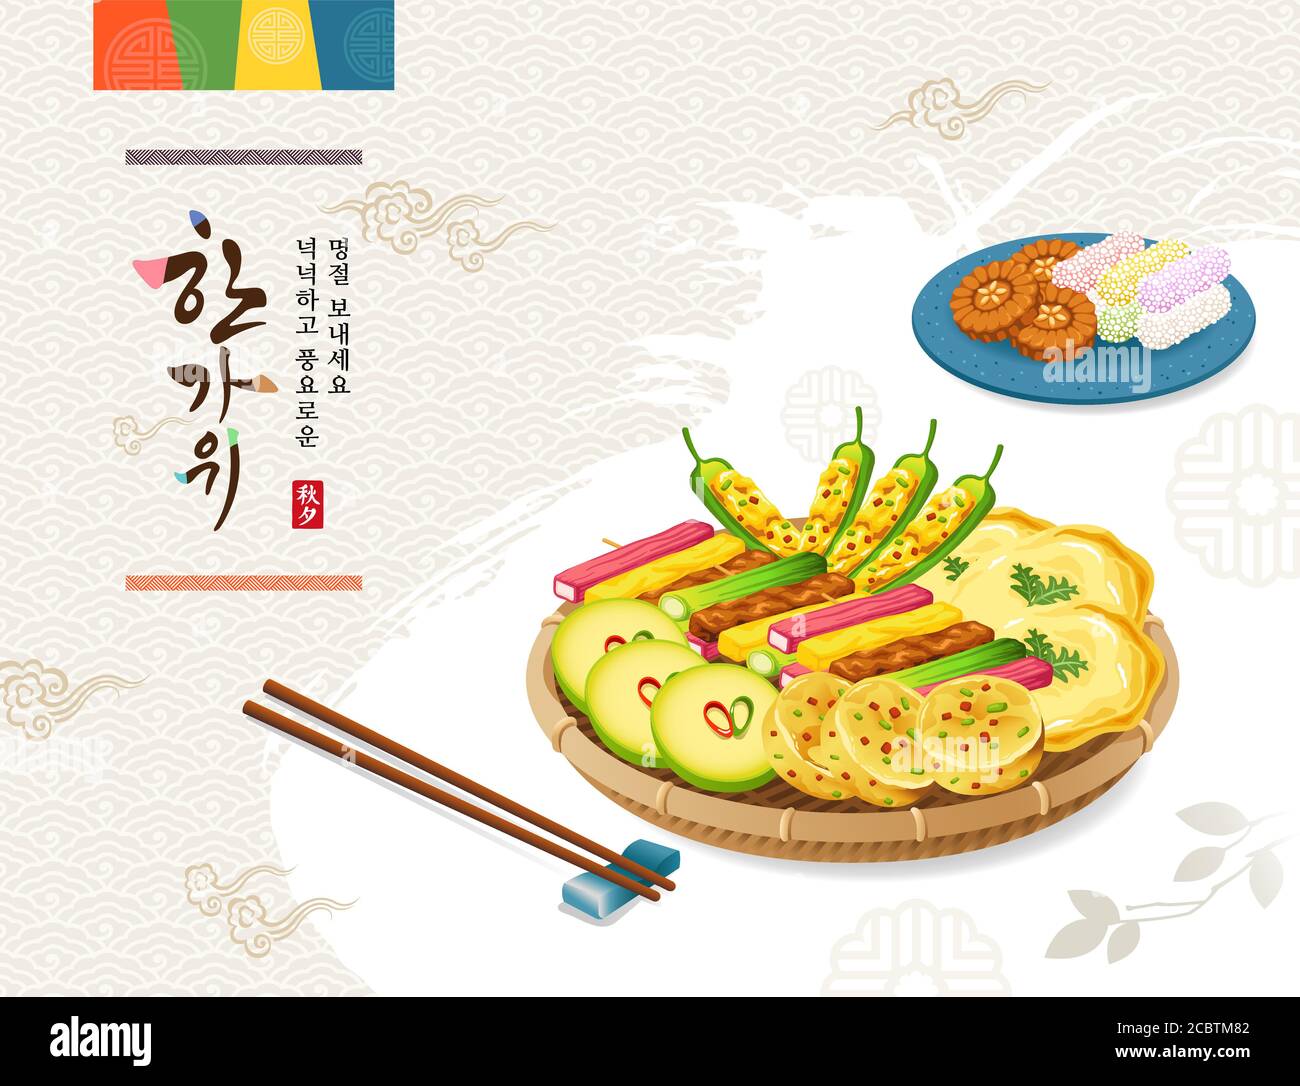 Koreanischer Erntedankfest. Traditionelle Urlaubsgerichte, Pfannkuchen, Desserts. Reiche Ernte und Hangawi, koreanische Übersetzung. Stock Vektor